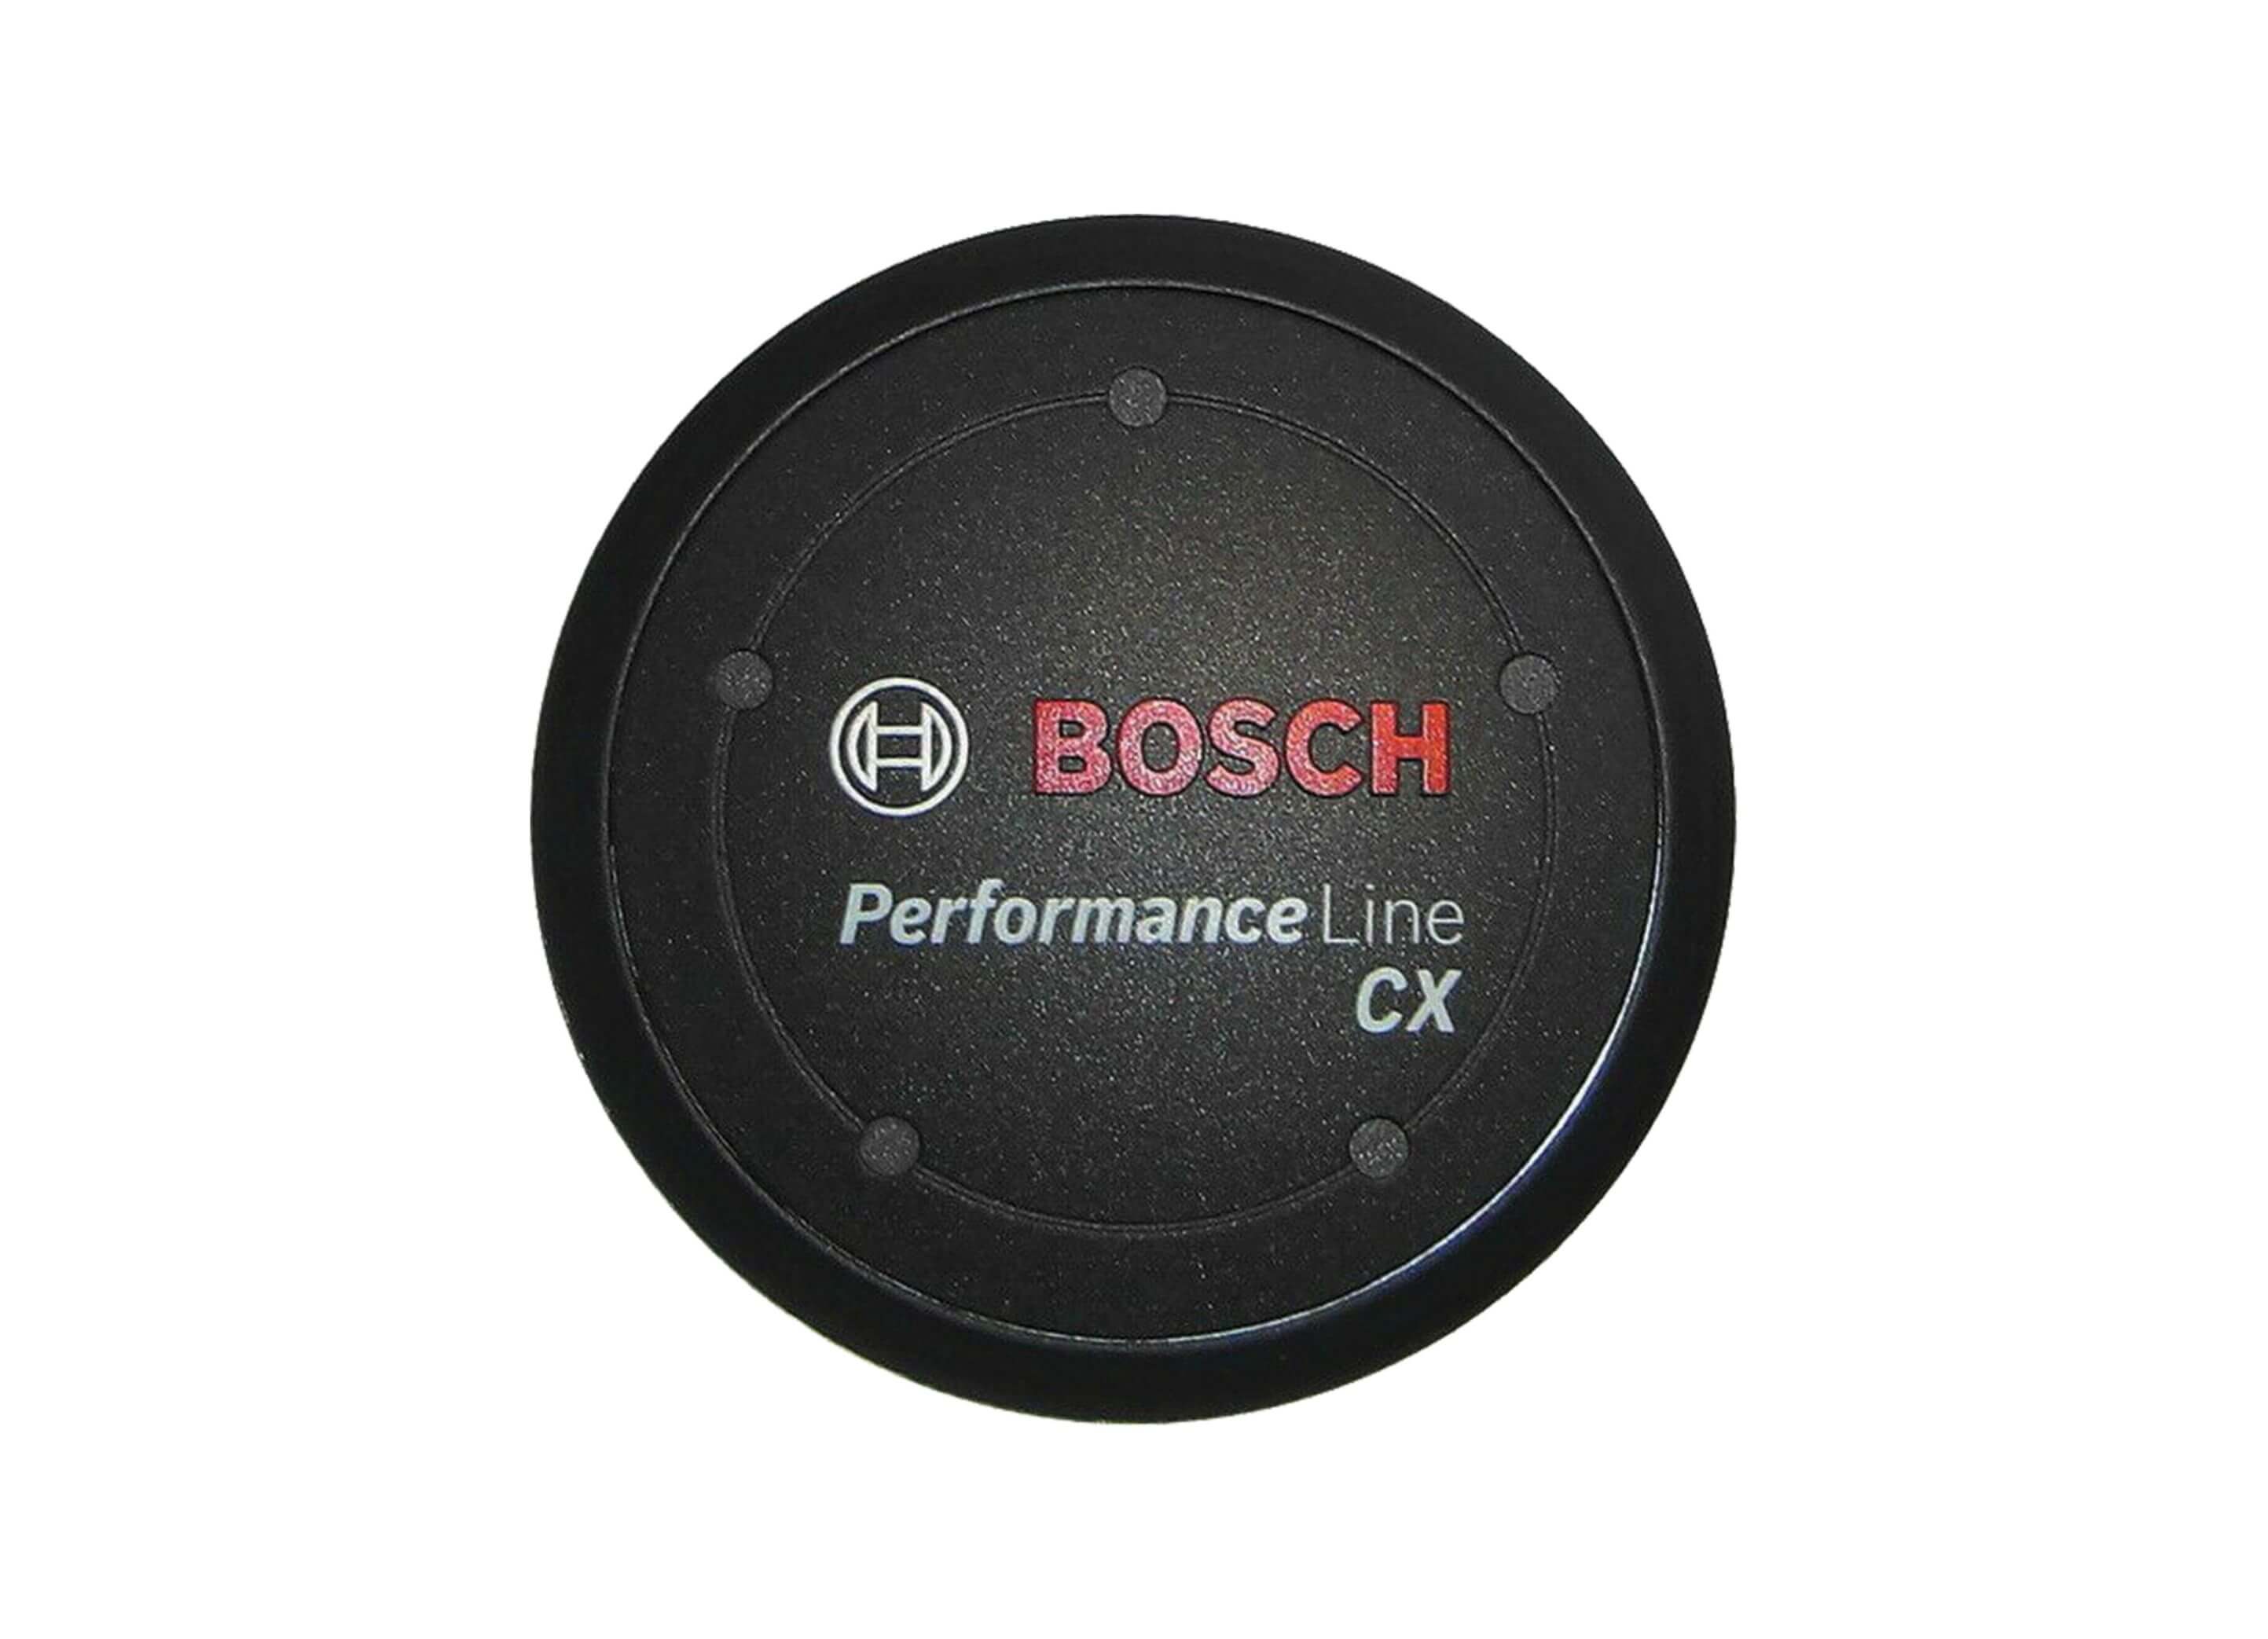 Bosch Design Cover Logo CX Gen 4